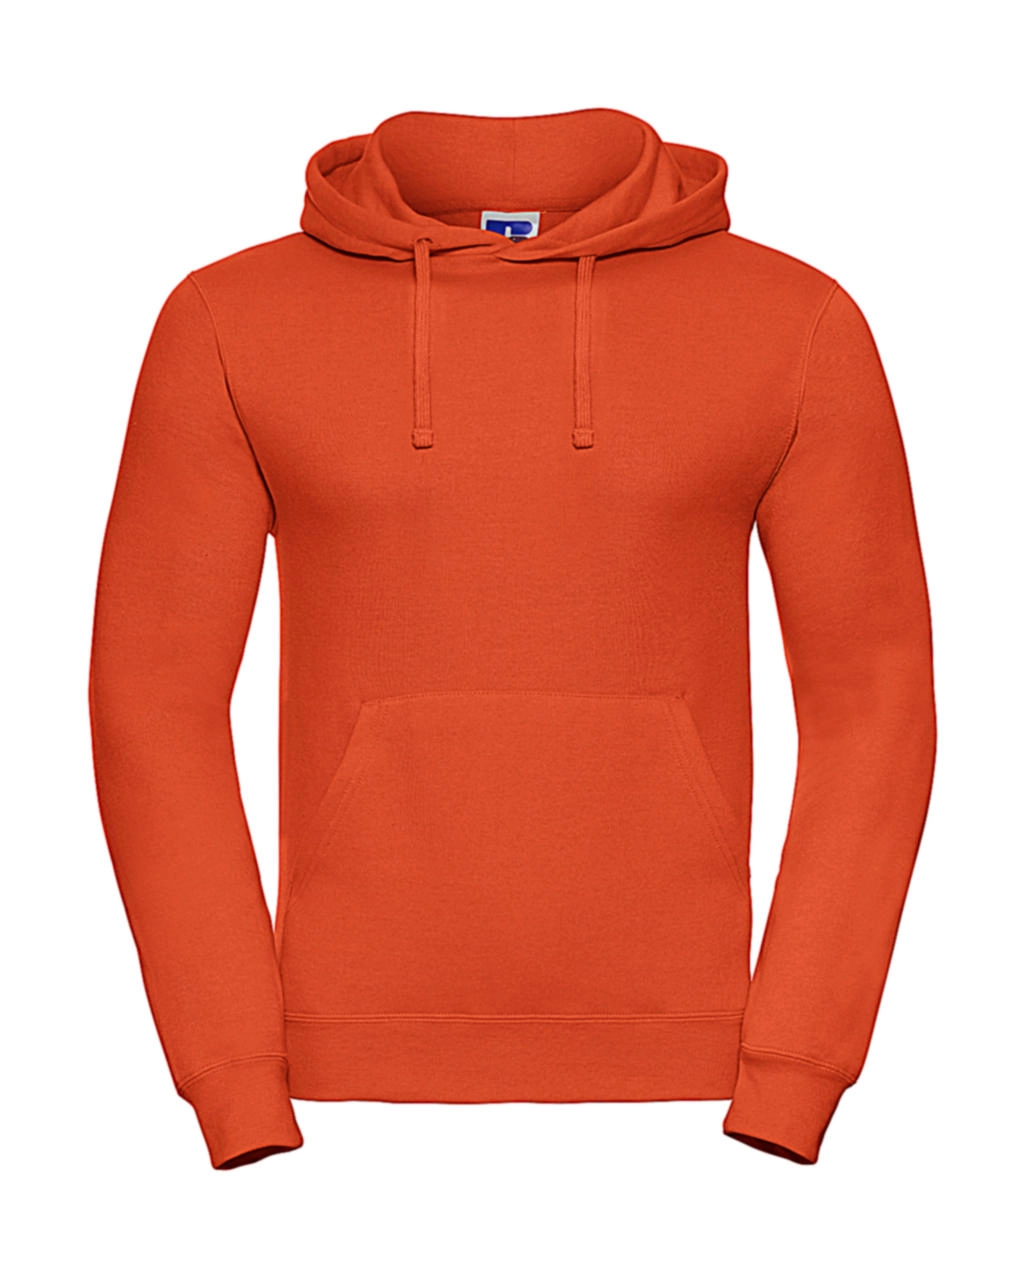 Hooded Sweatshirt zum Besticken und Bedrucken in der Farbe Orange mit Ihren Logo, Schriftzug oder Motiv.